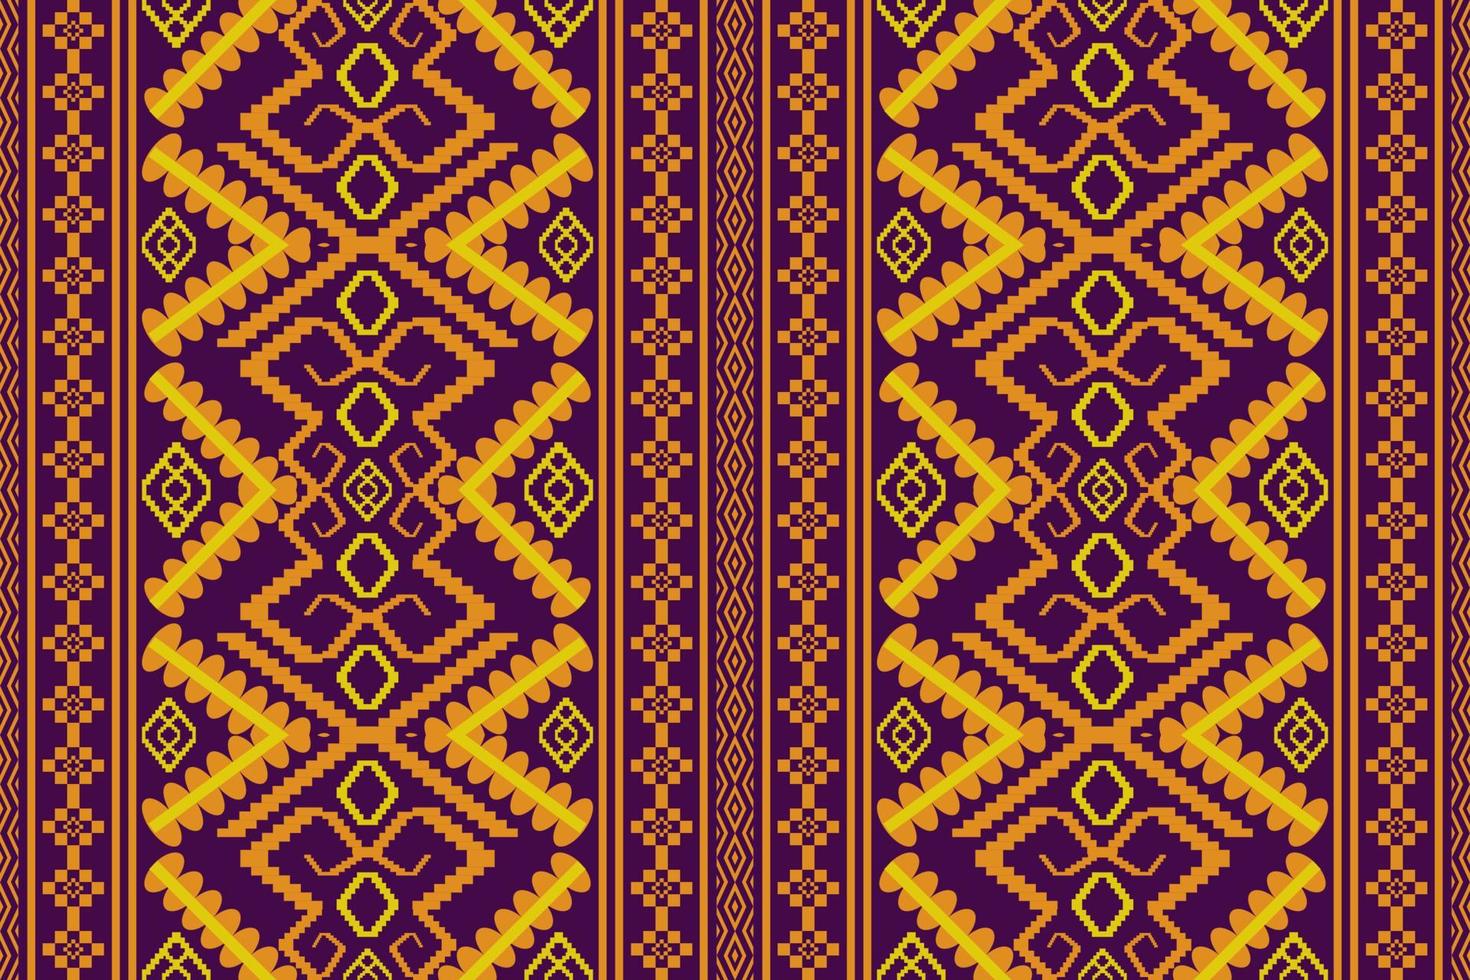 geometrico etnico orientale tradizionale pattern.figure ricamo tribale style.design per carta da parati, abbigliamento, confezionamento, tessuto, illustrazione vettoriale